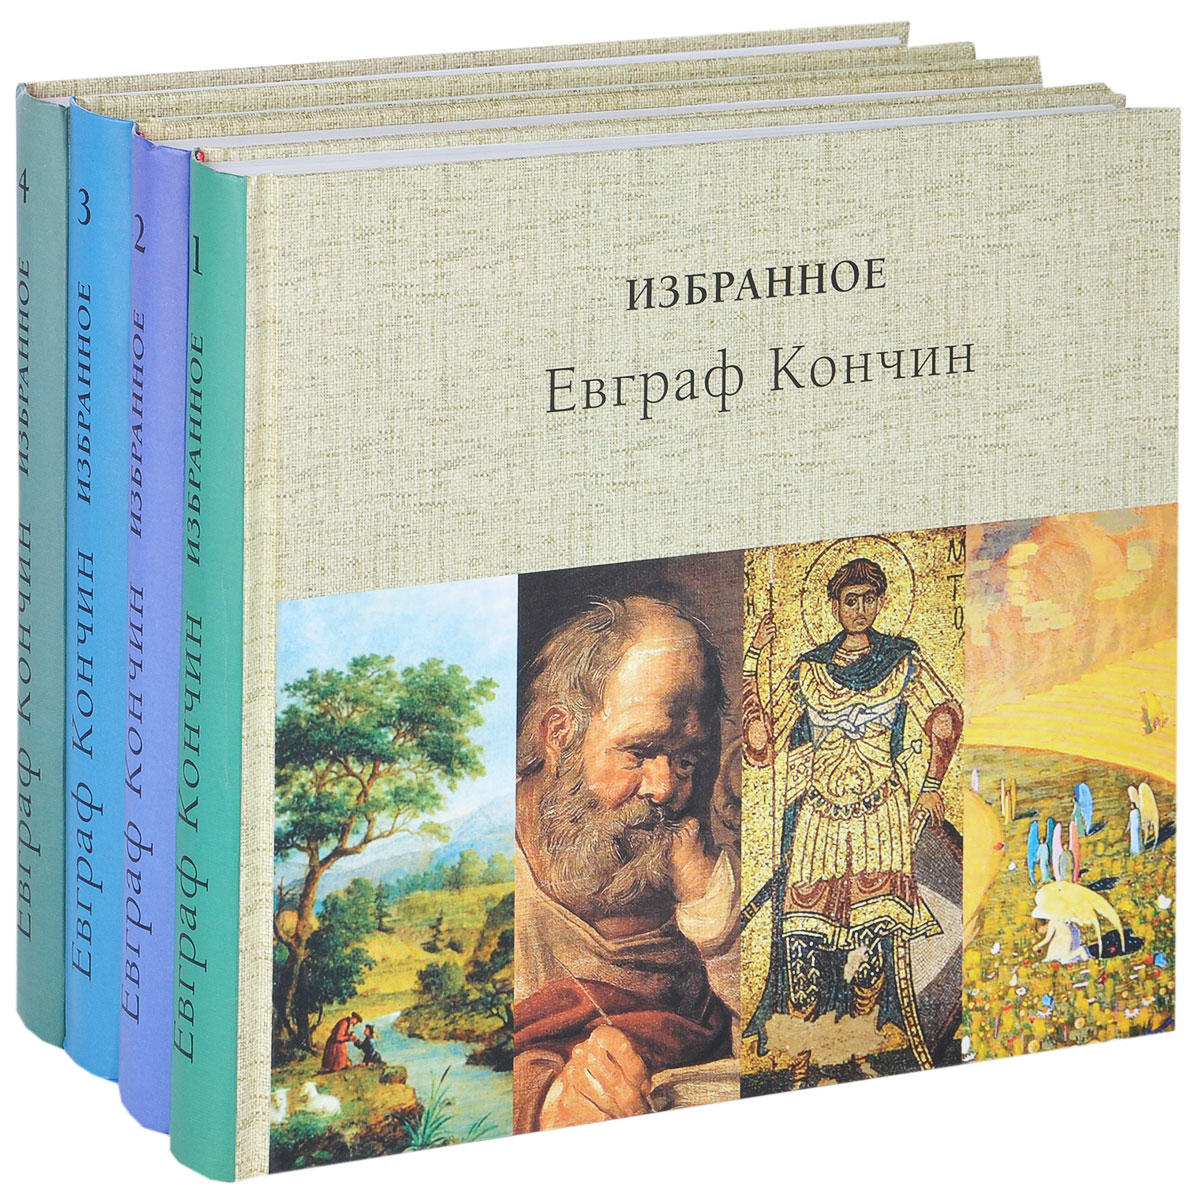 Евграф Кончин. Избранное. В 4 томах (комплект из 4 книг)